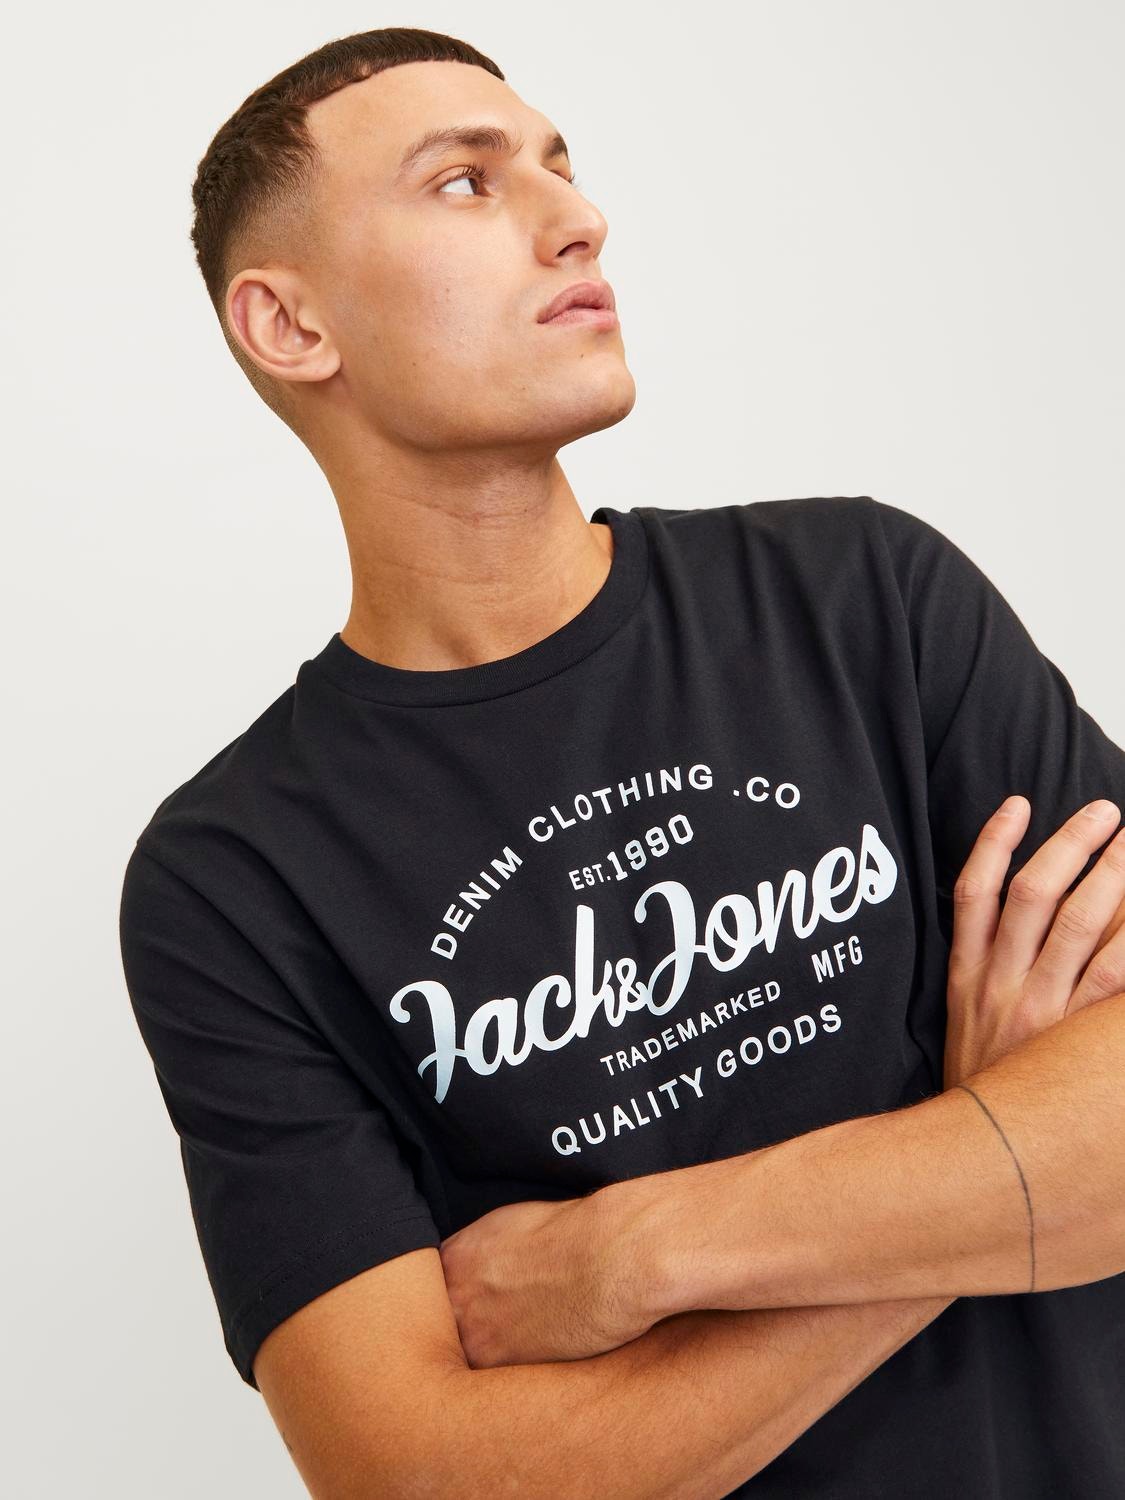 Jack & Jones Gedruckt Rundhals T-shirt -Black - 12247972